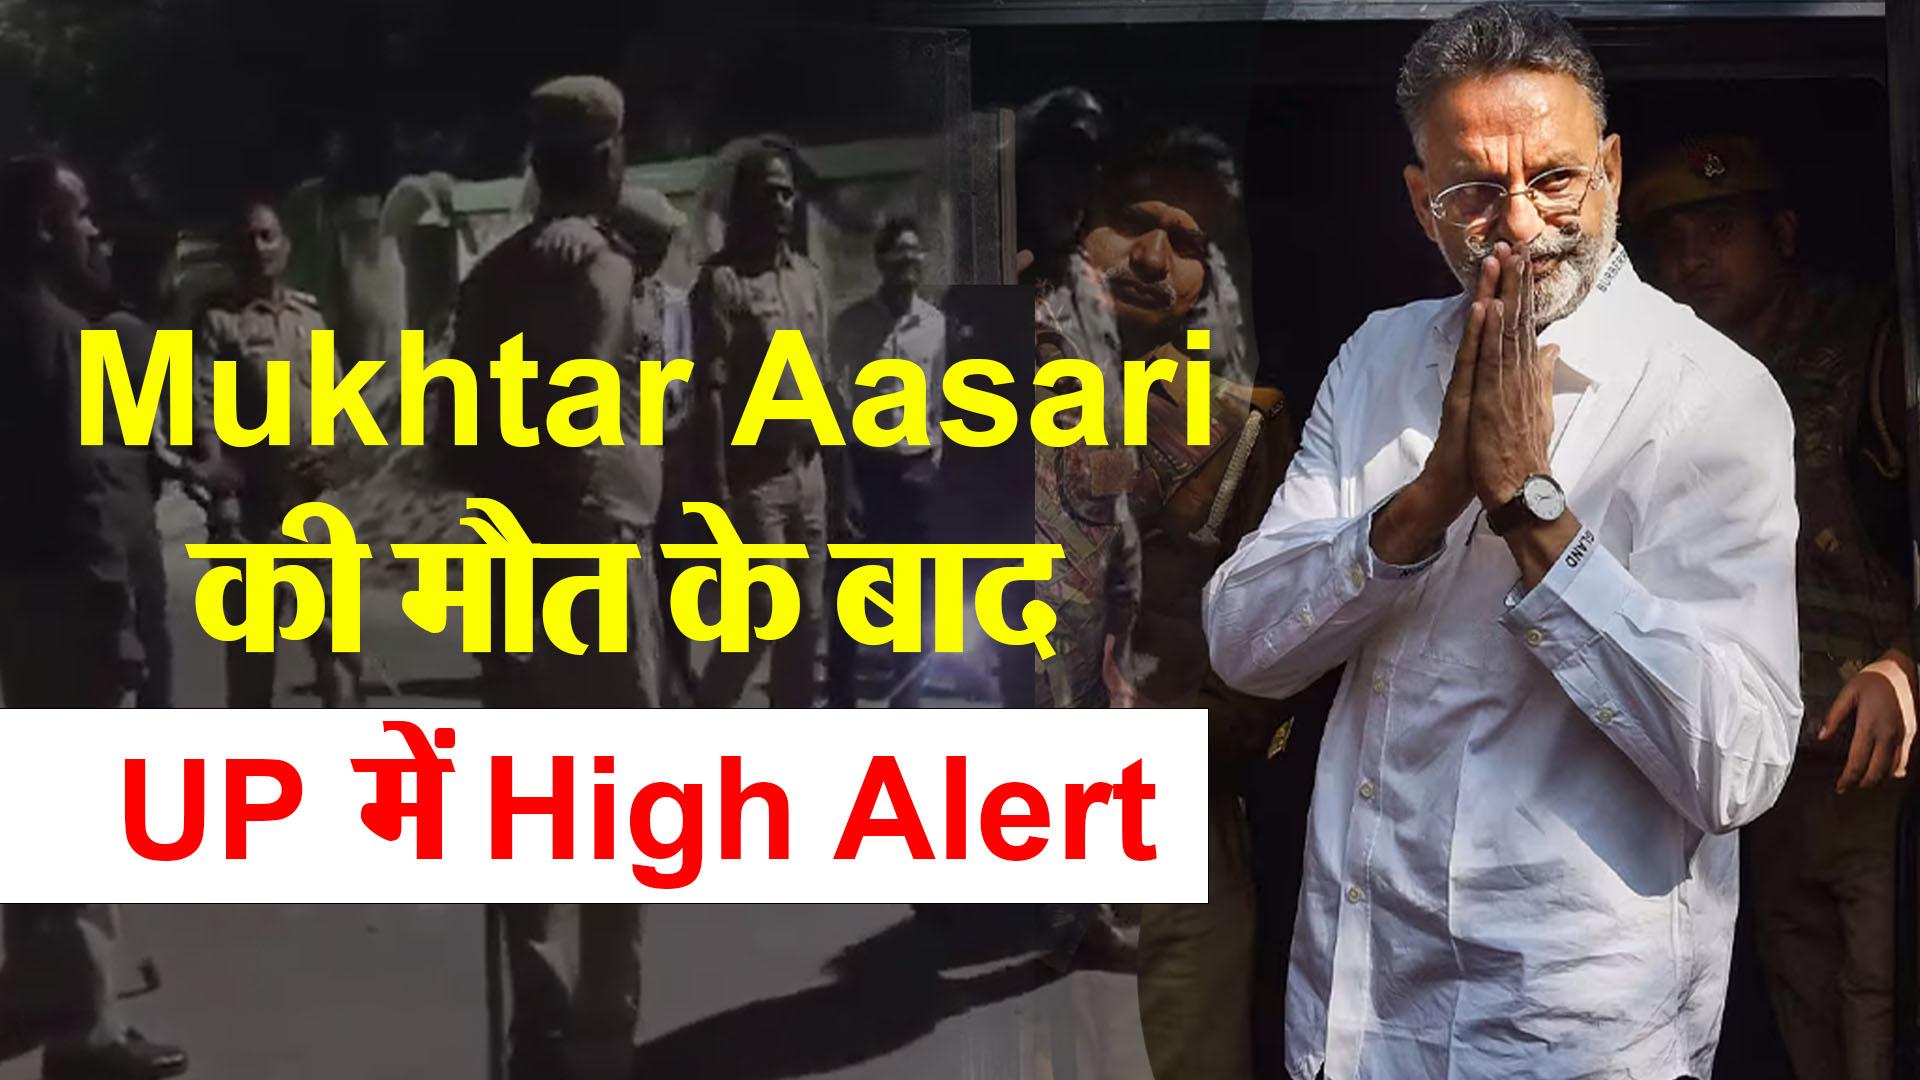 लखनऊ: Mukhtar Ansari की मौत के बाद UP में High Alert, ADG अमिताभ यश बोले- प्रदेश में शांति कायम